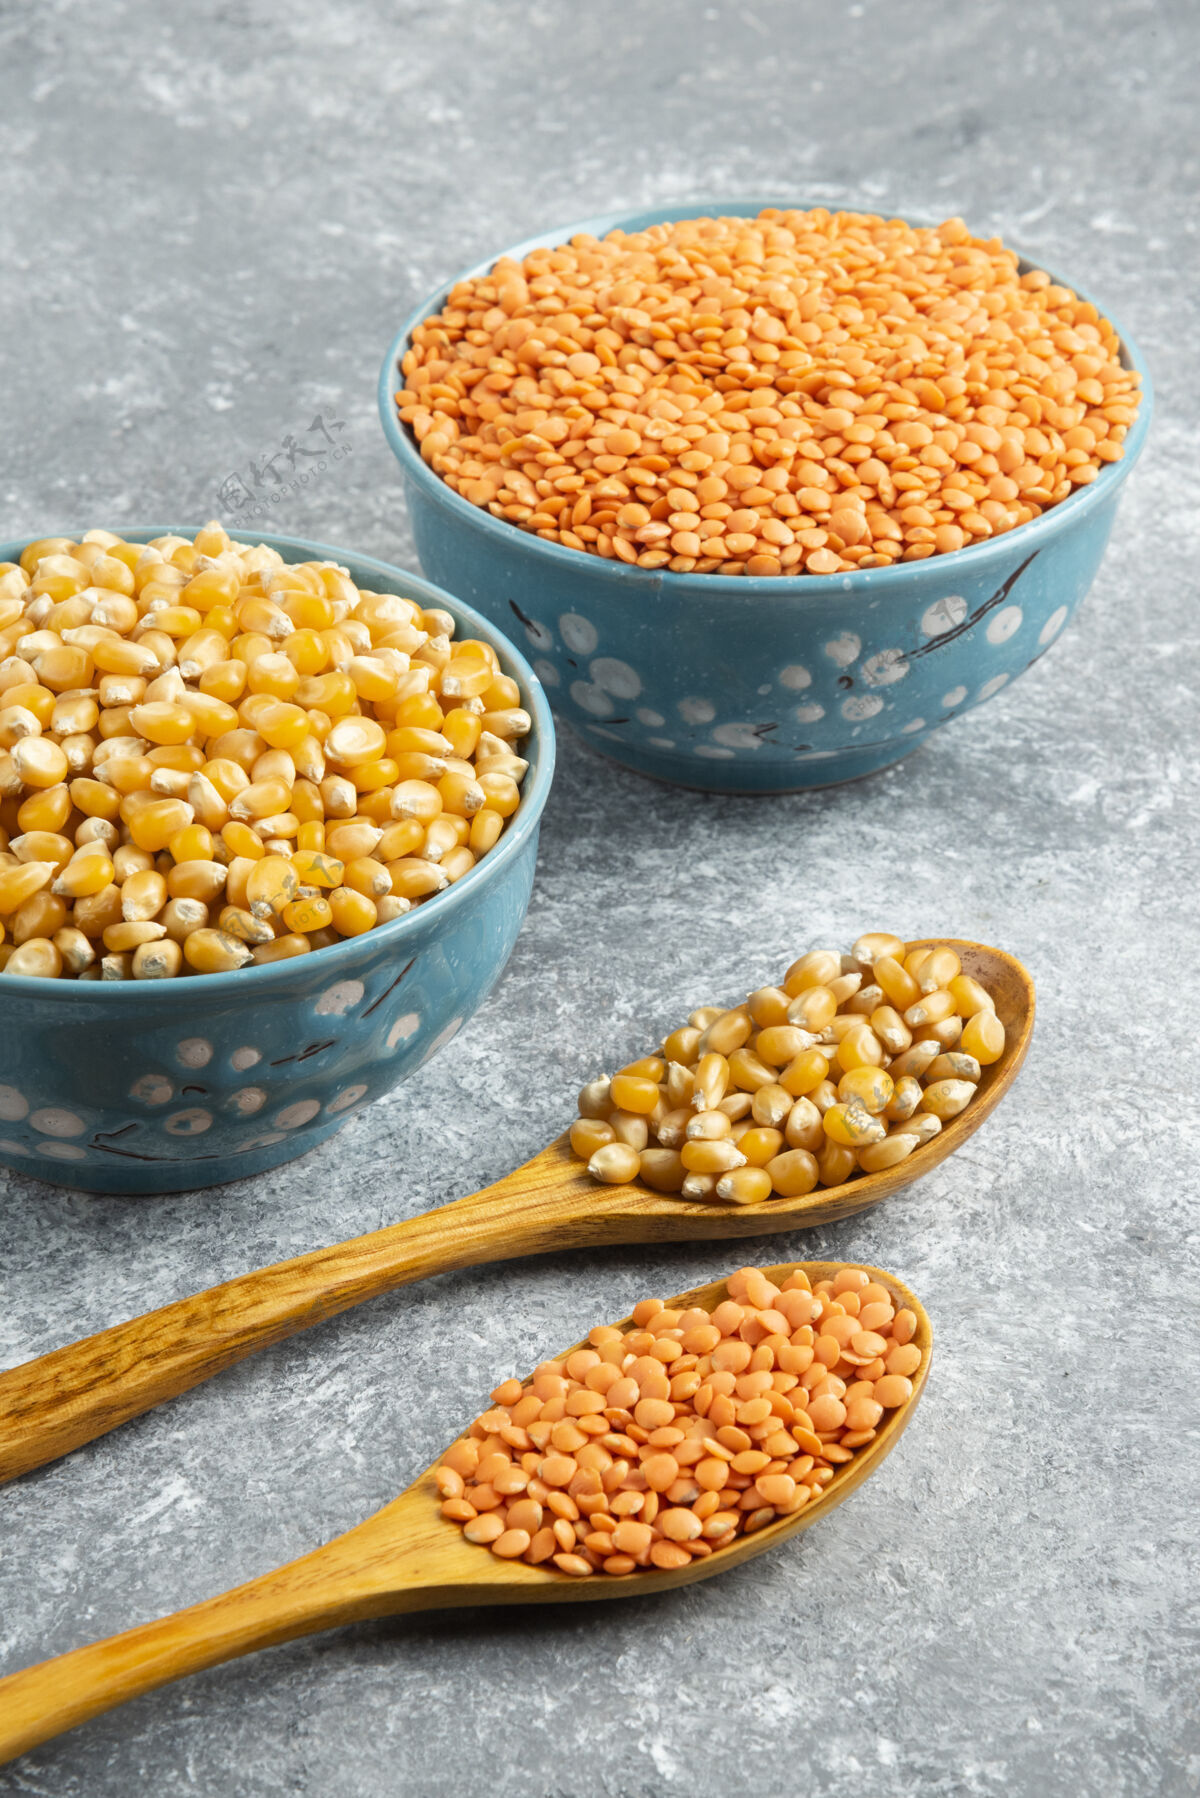 谷物两碗生玉米粒和红扁豆放在大理石表面扁豆仁有机